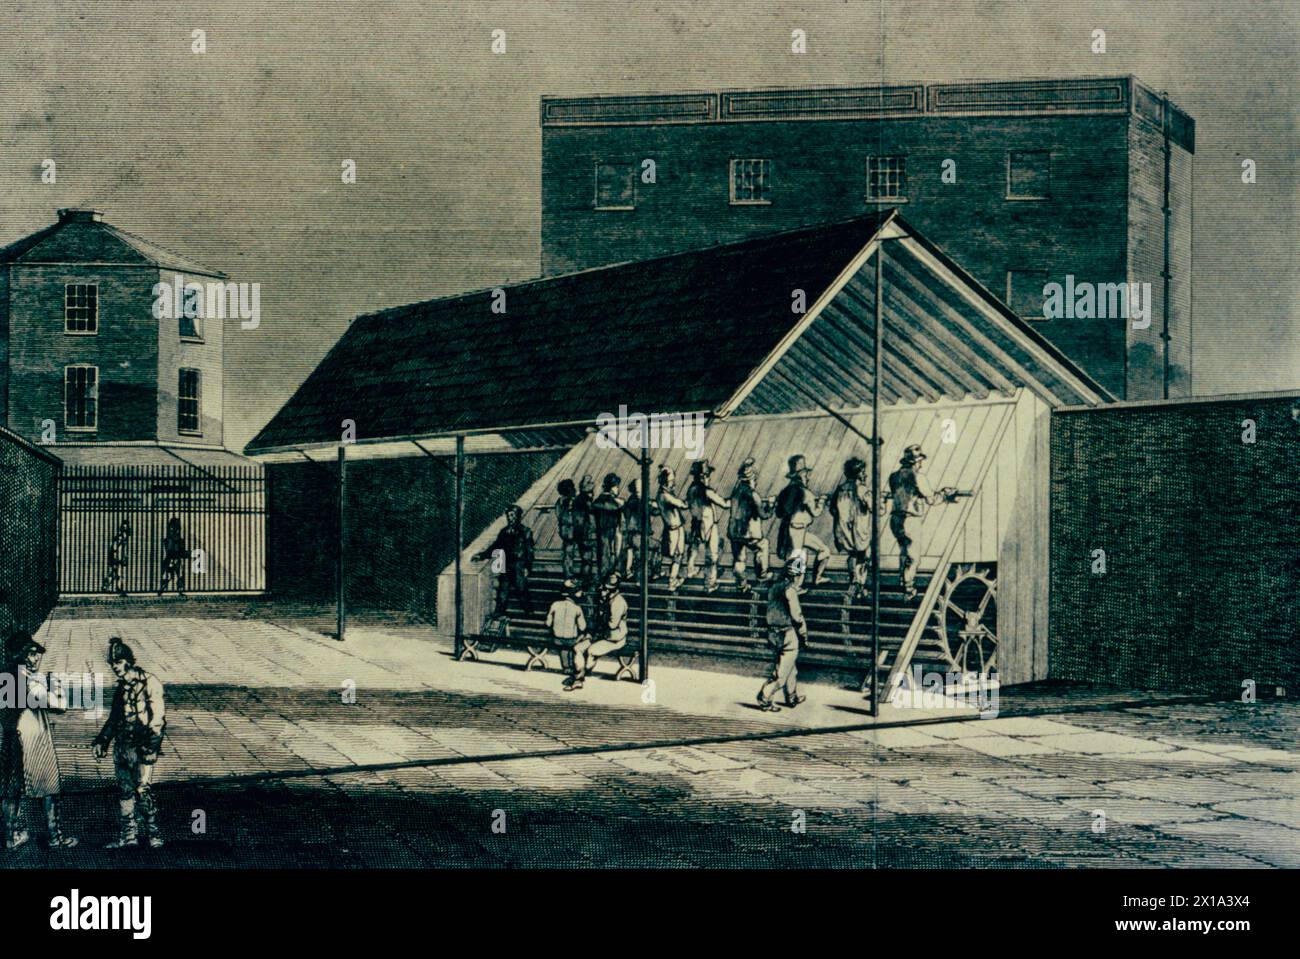 Les prisonniers de la Maison de correction de Bixton sont mis au travail sur un tapis roulant pour imposer la discipline, Angleterre, gravure, 19ème siècle Banque D'Images